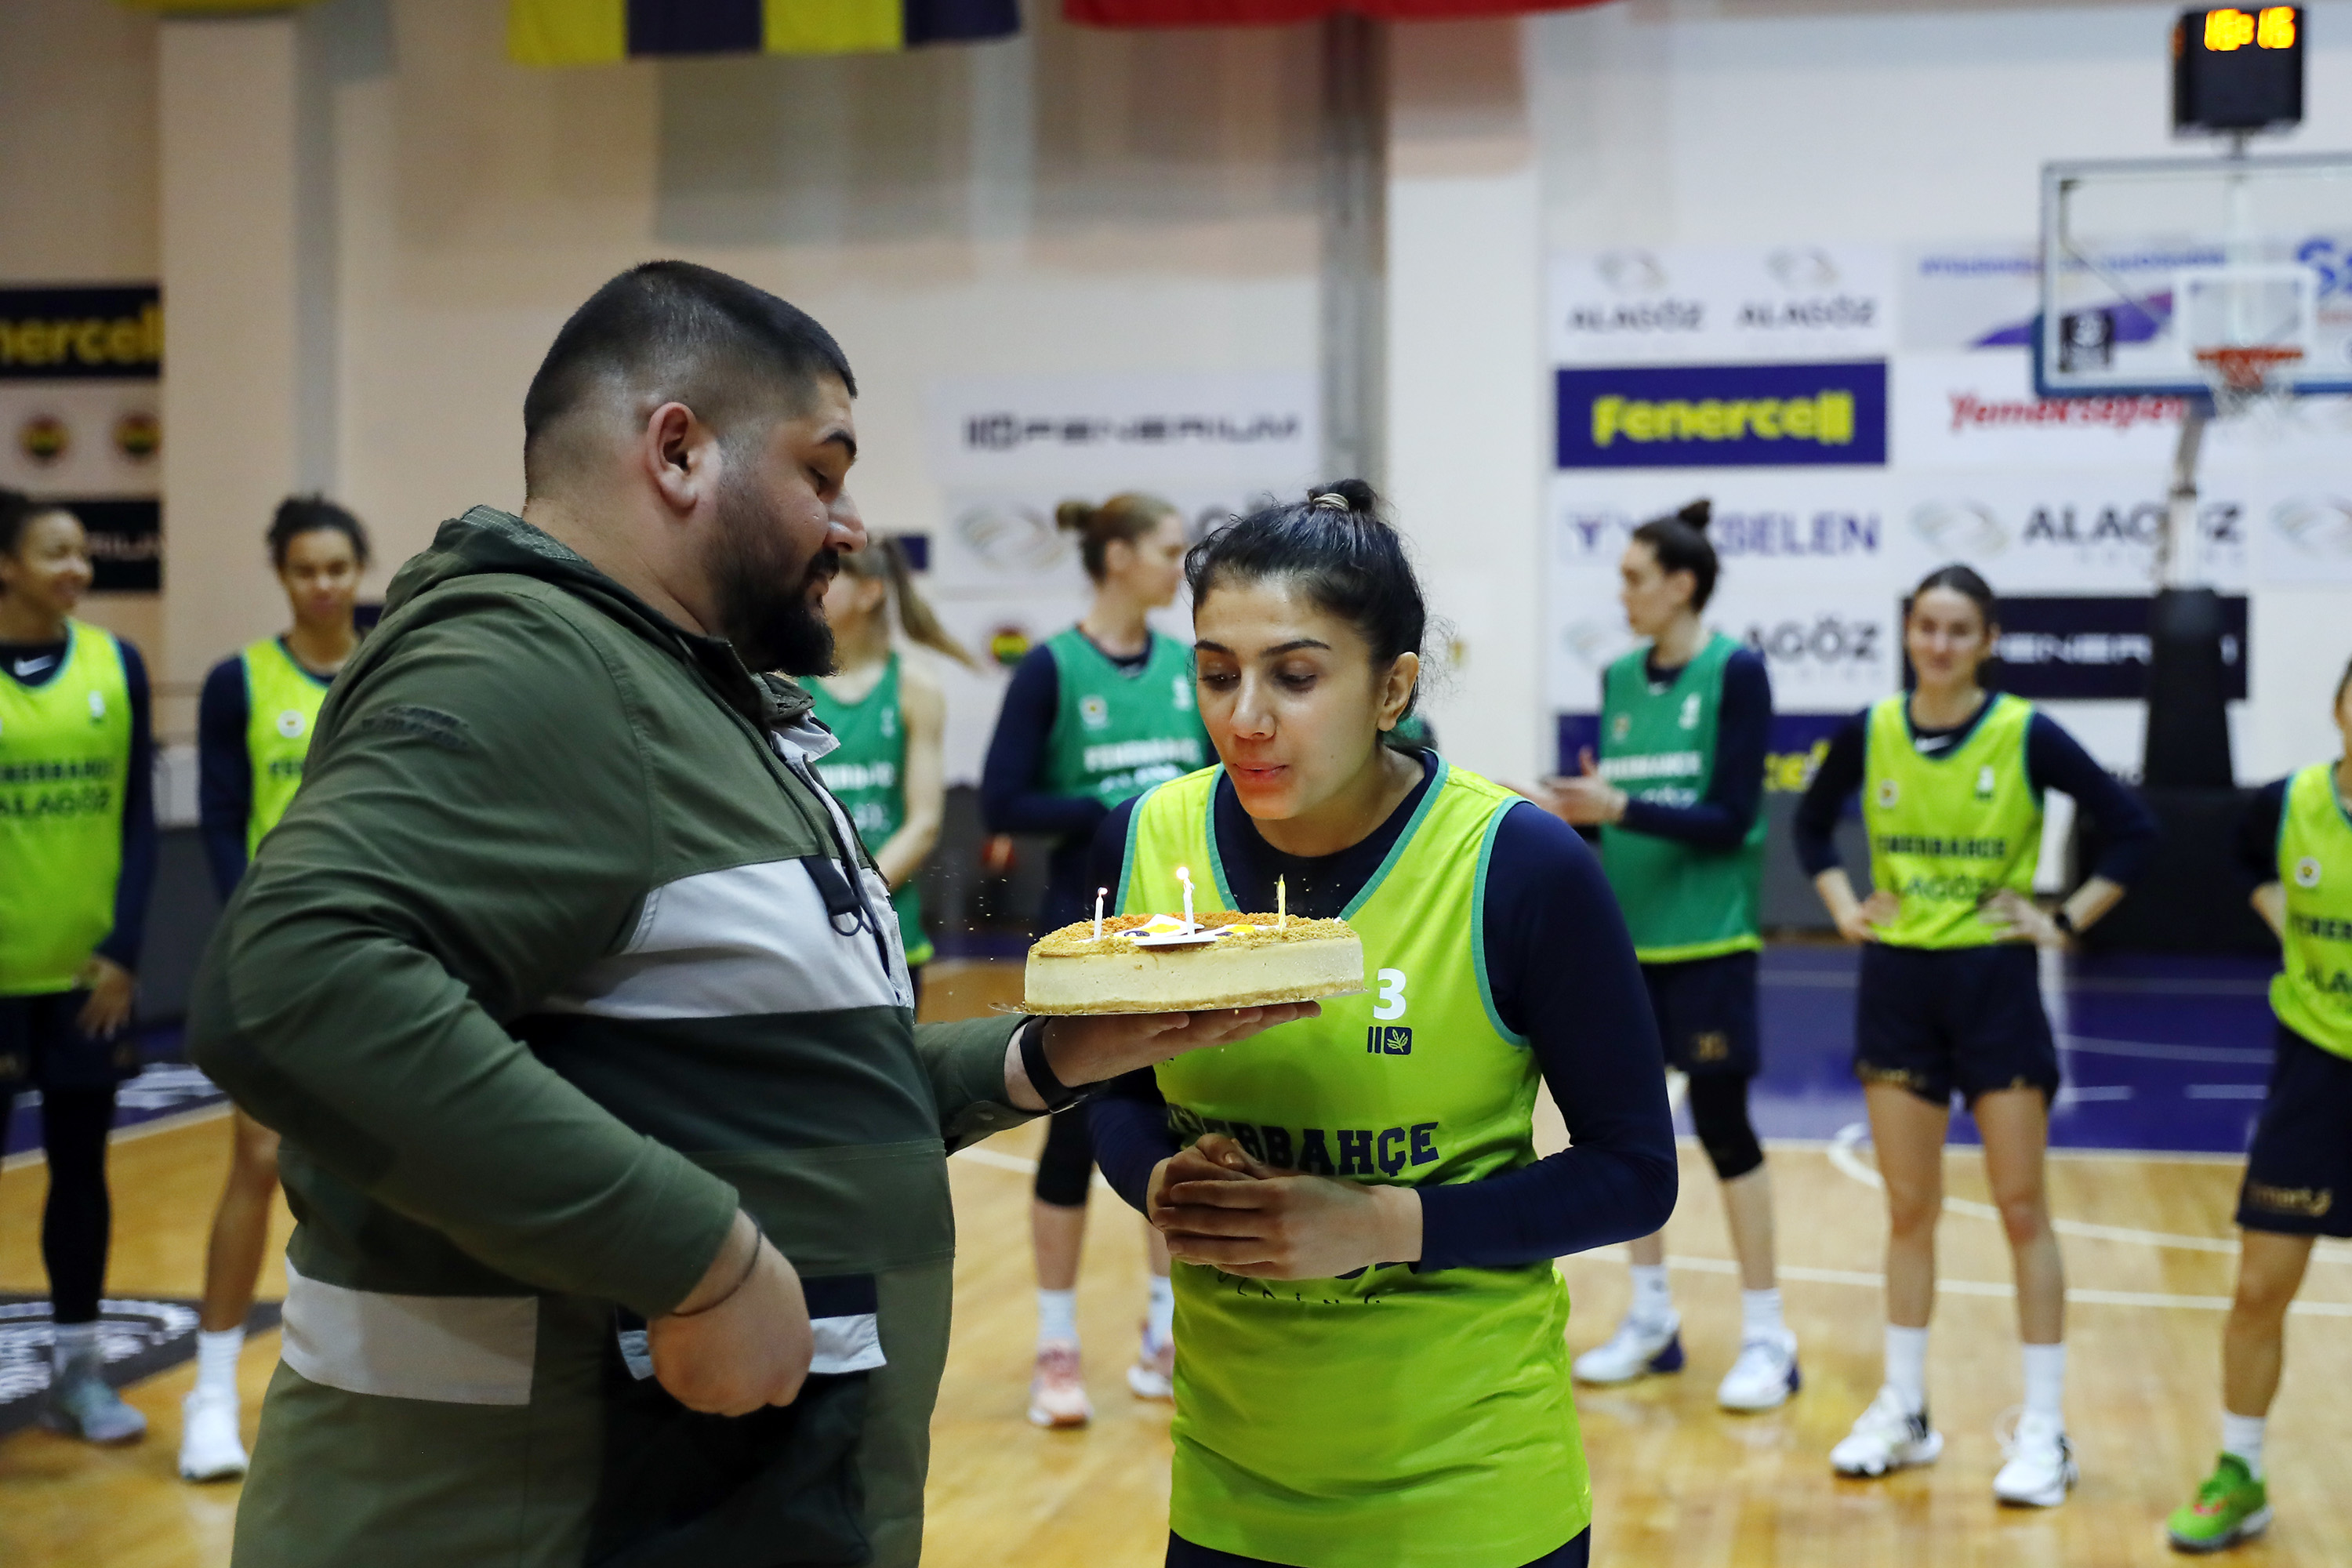 Fenerbahçe Alagöz Holding, Sopron Basket maçı hazırlıklarını sürdürüyor